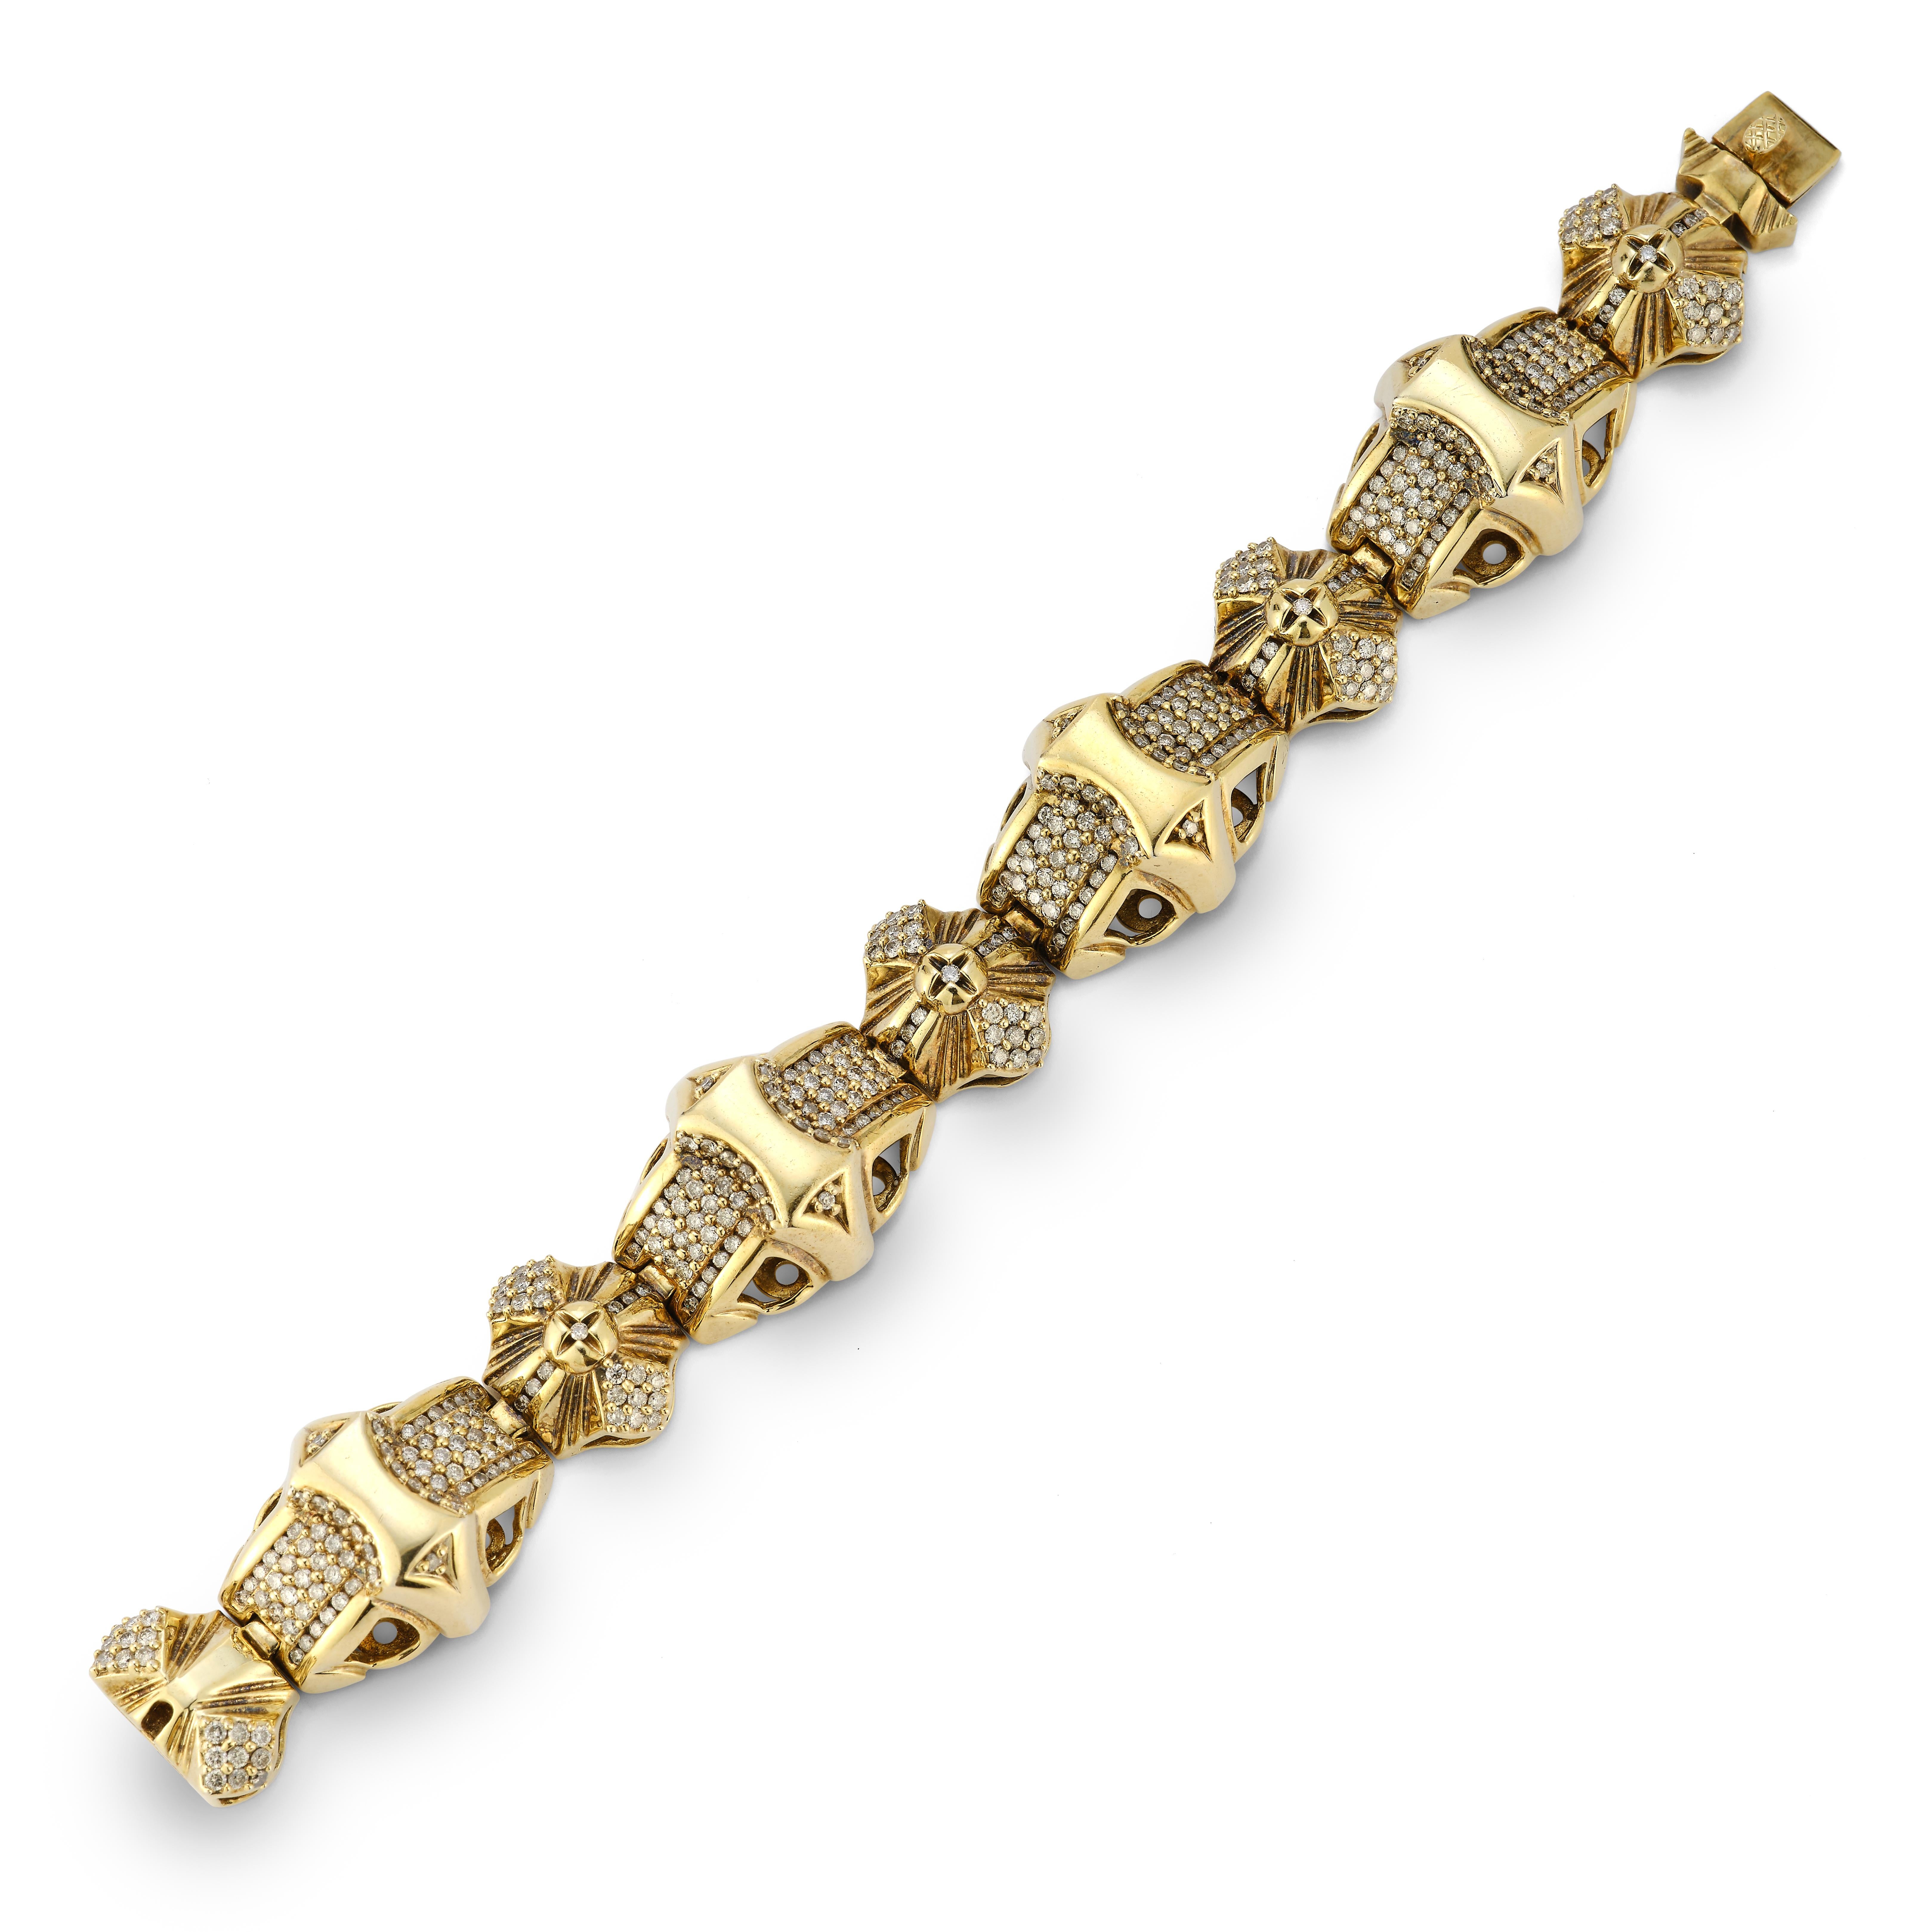 Bracelet pour homme en or et diamants pavés 

Maillons géométriques en or avec 390 diamants pavés sertis en or jaune 14k.

Poids total approximatif du diamant : 11,7 ct

Mesures : 7